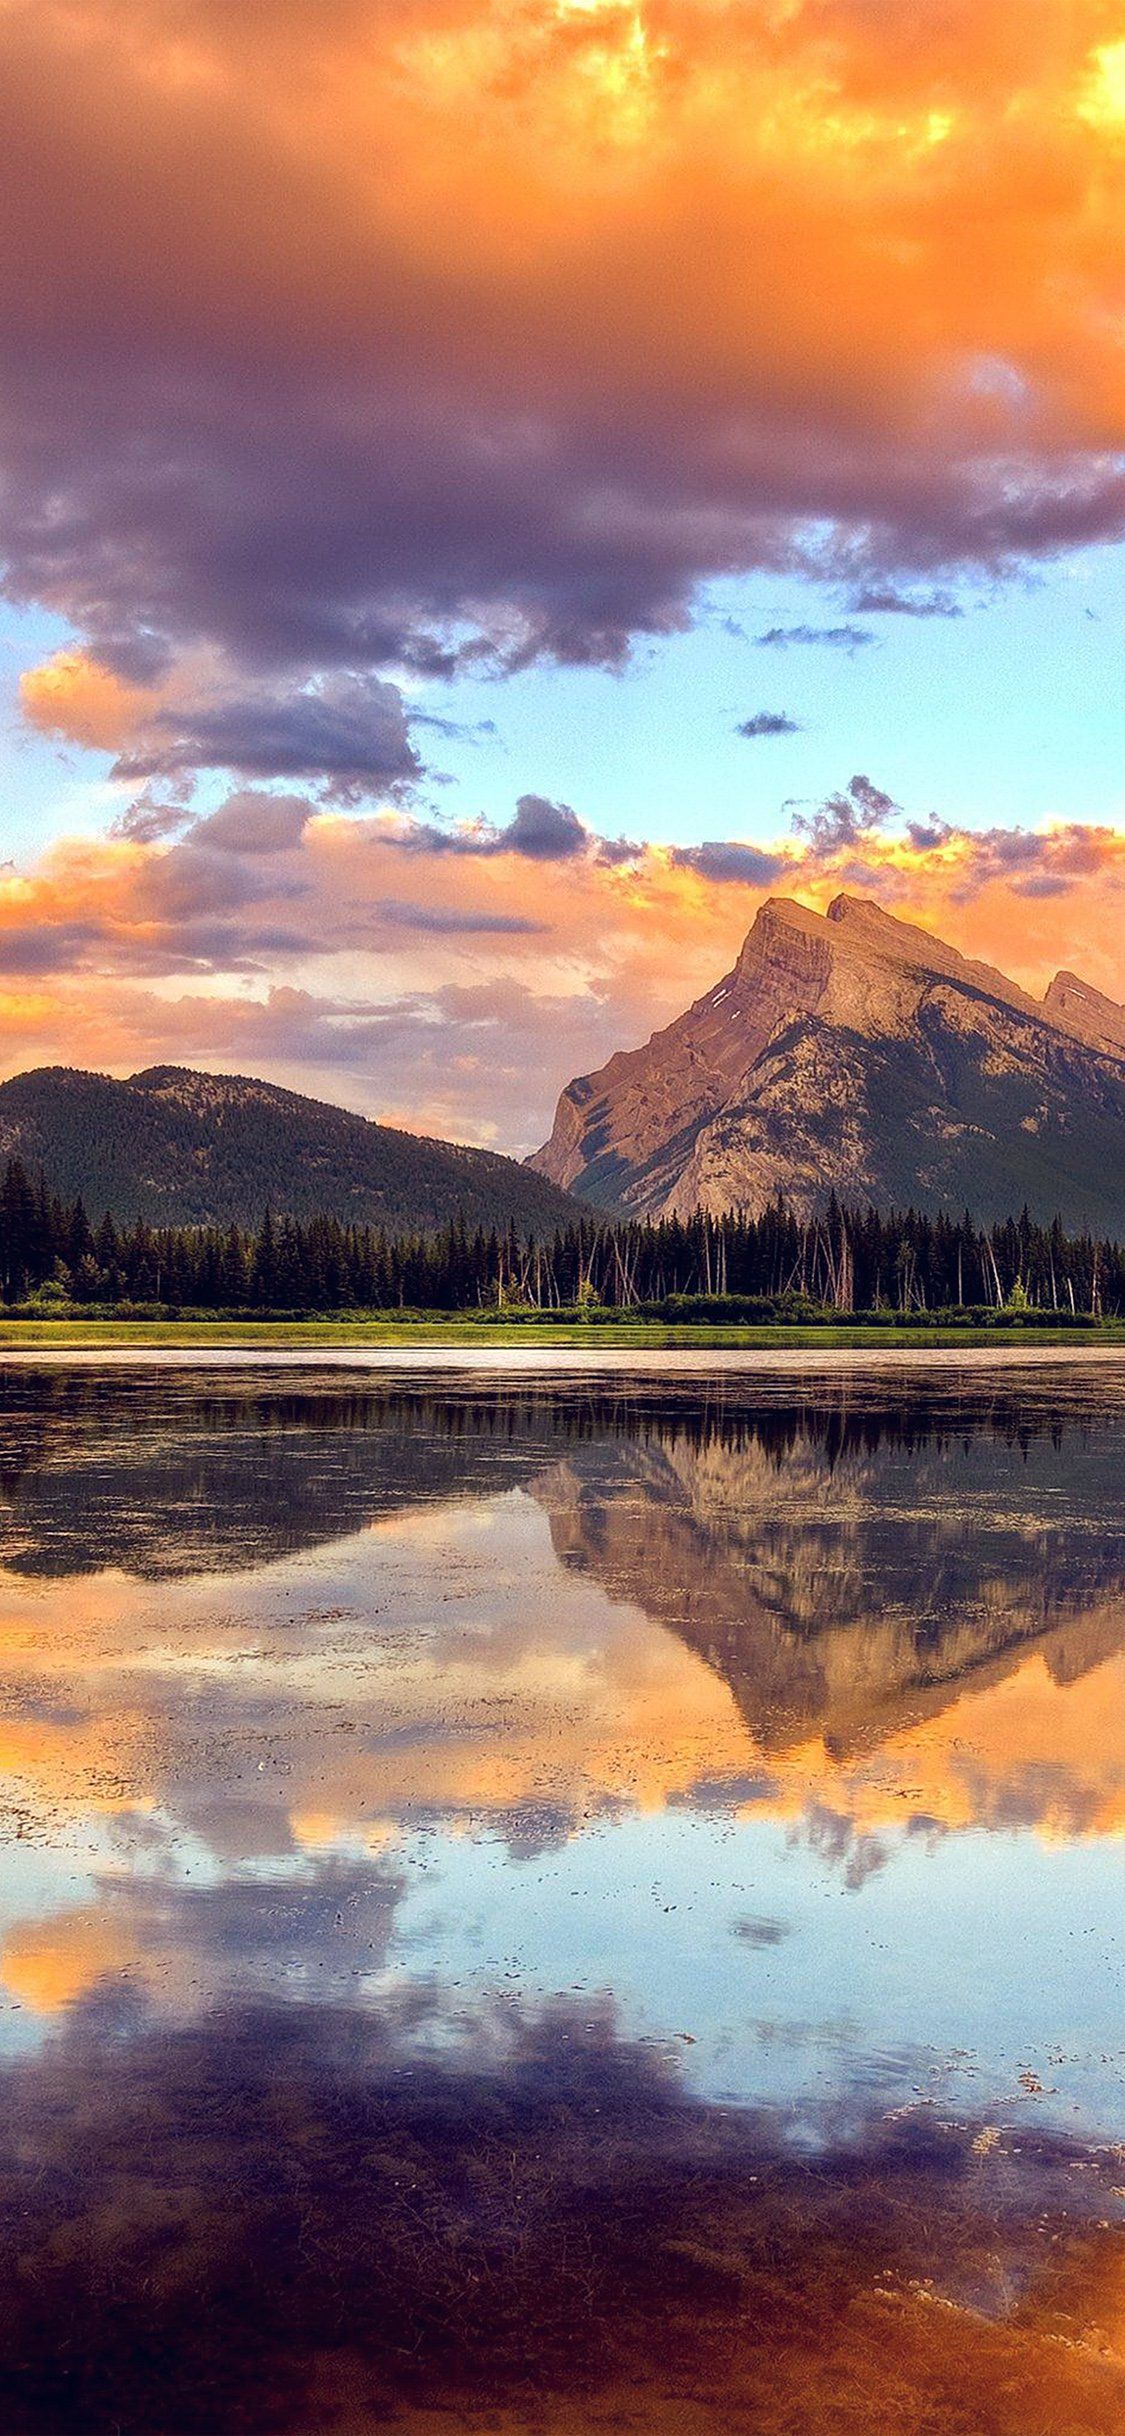 Mountain lake sunset iPhone Wallpaper Free Download